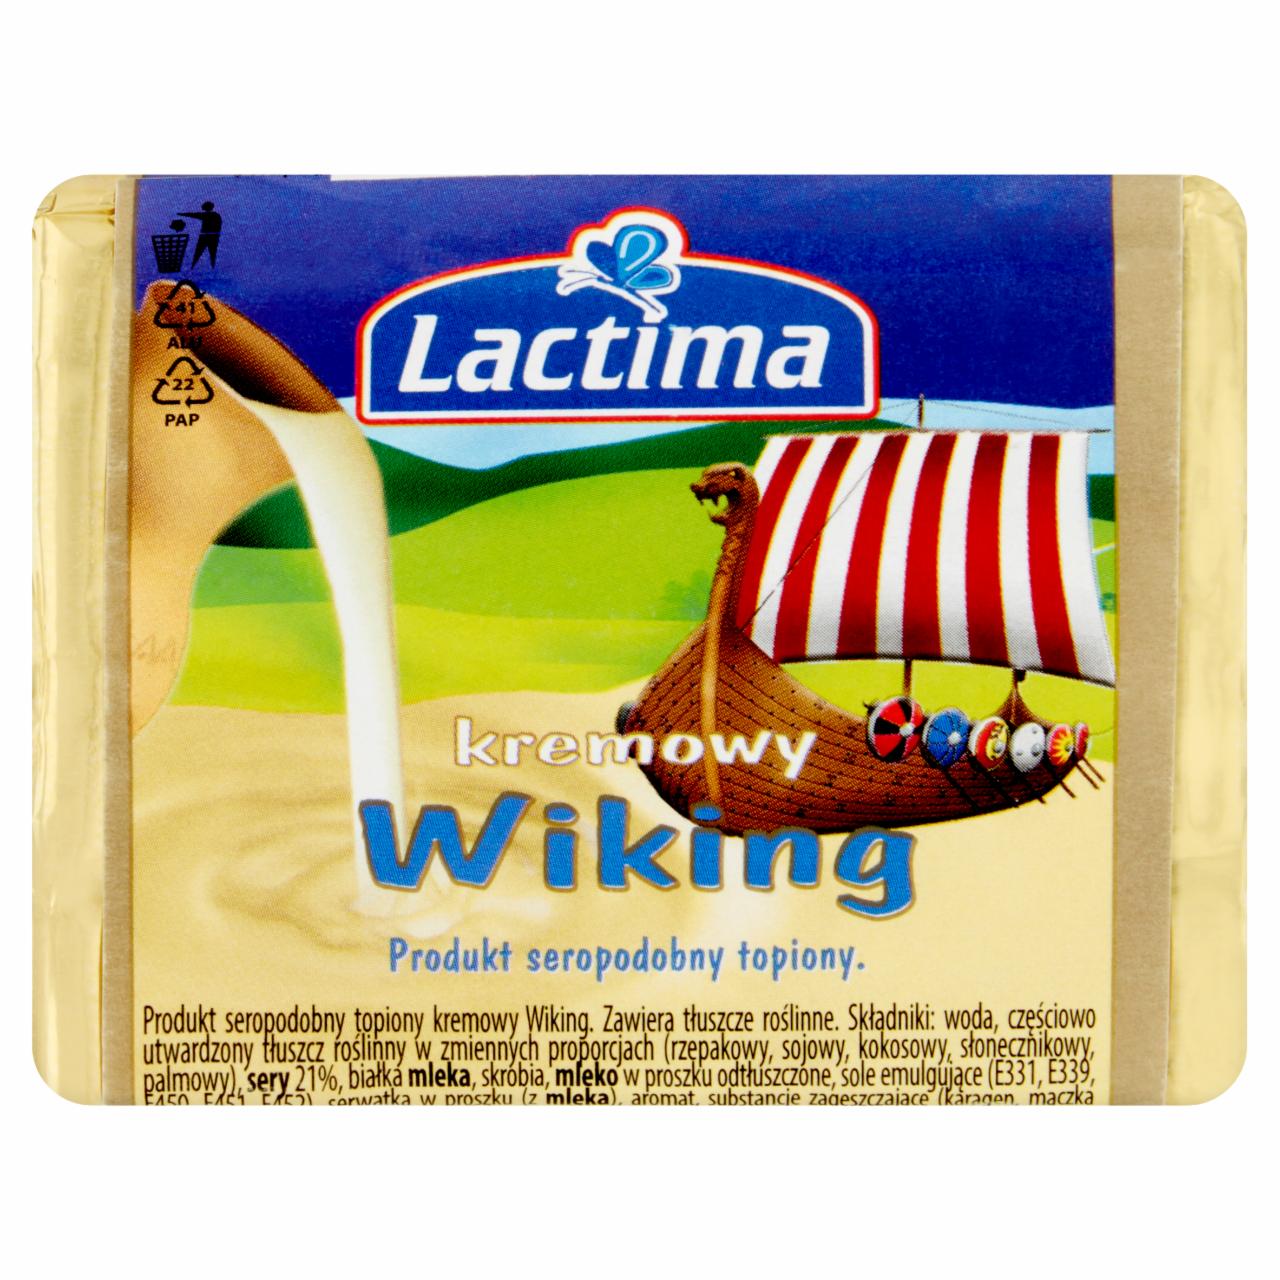 Zdjęcia - Lactima Produkt seropodobny topiony kremowy Wiking 100 g